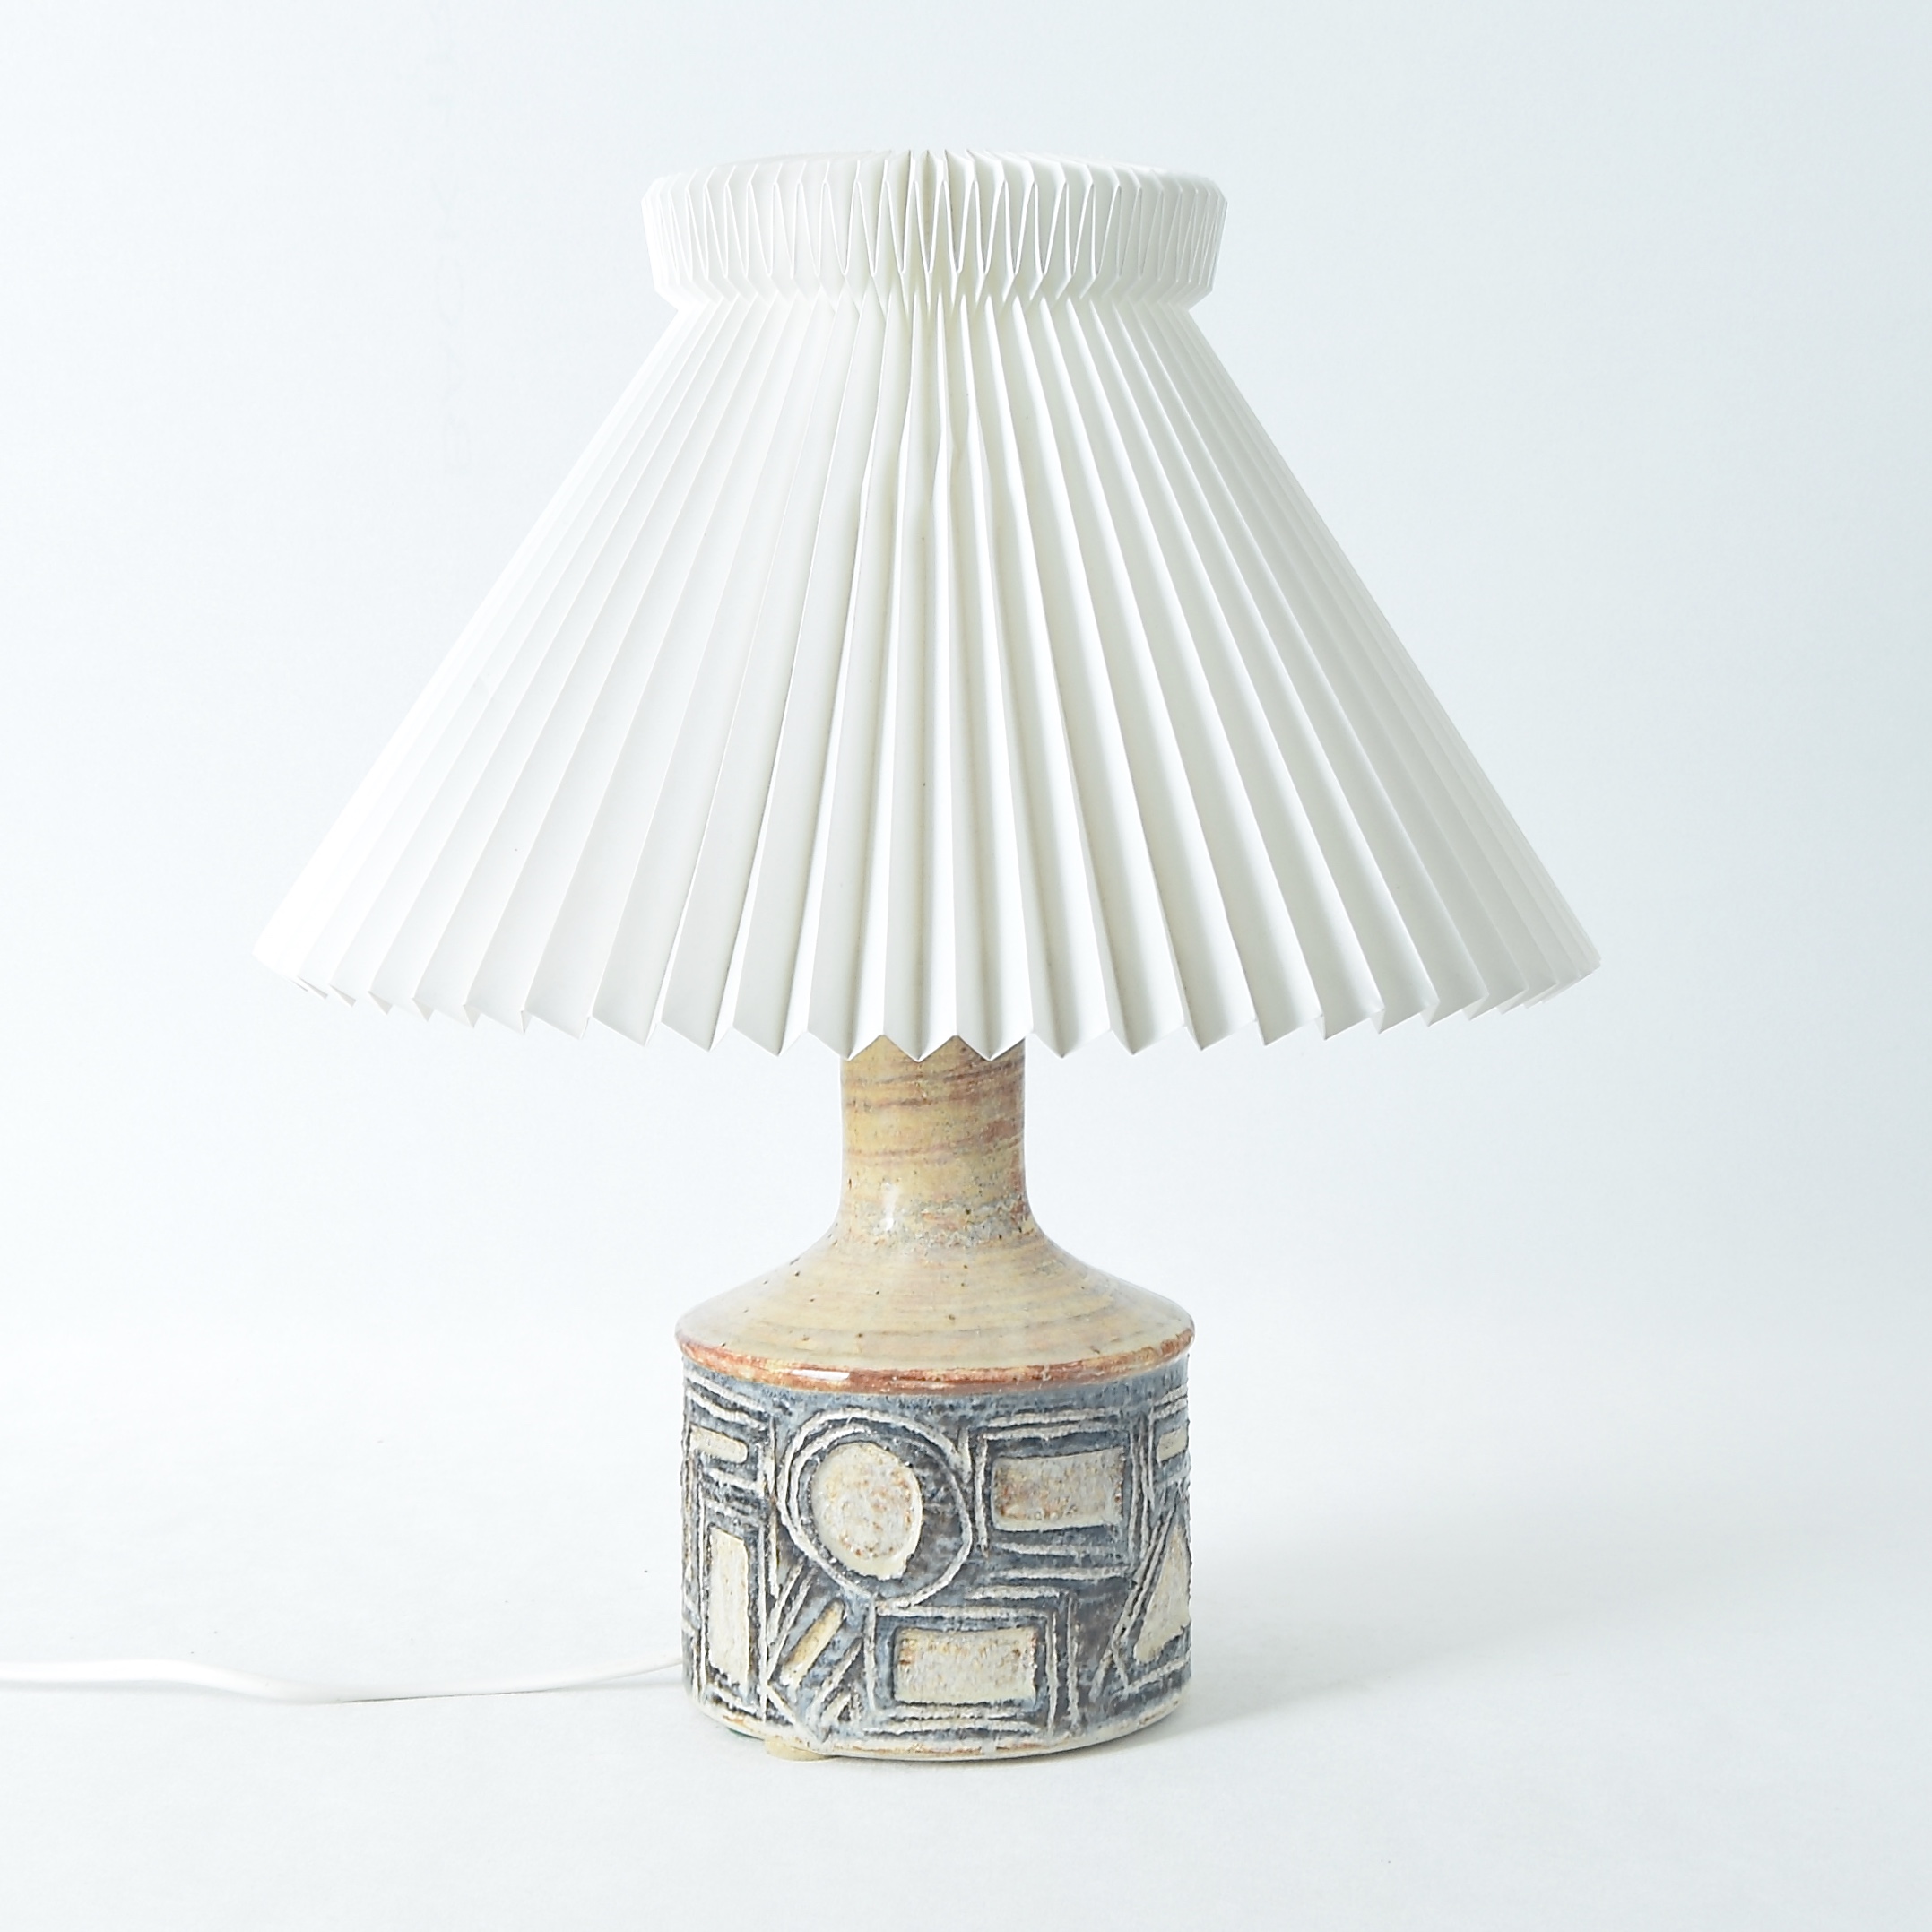 Tomhed Traditionel interferens Bordlampe i keramik. 26,5 cm. Axella Keramik. - Bordlamper -  Porcelænsbutikken